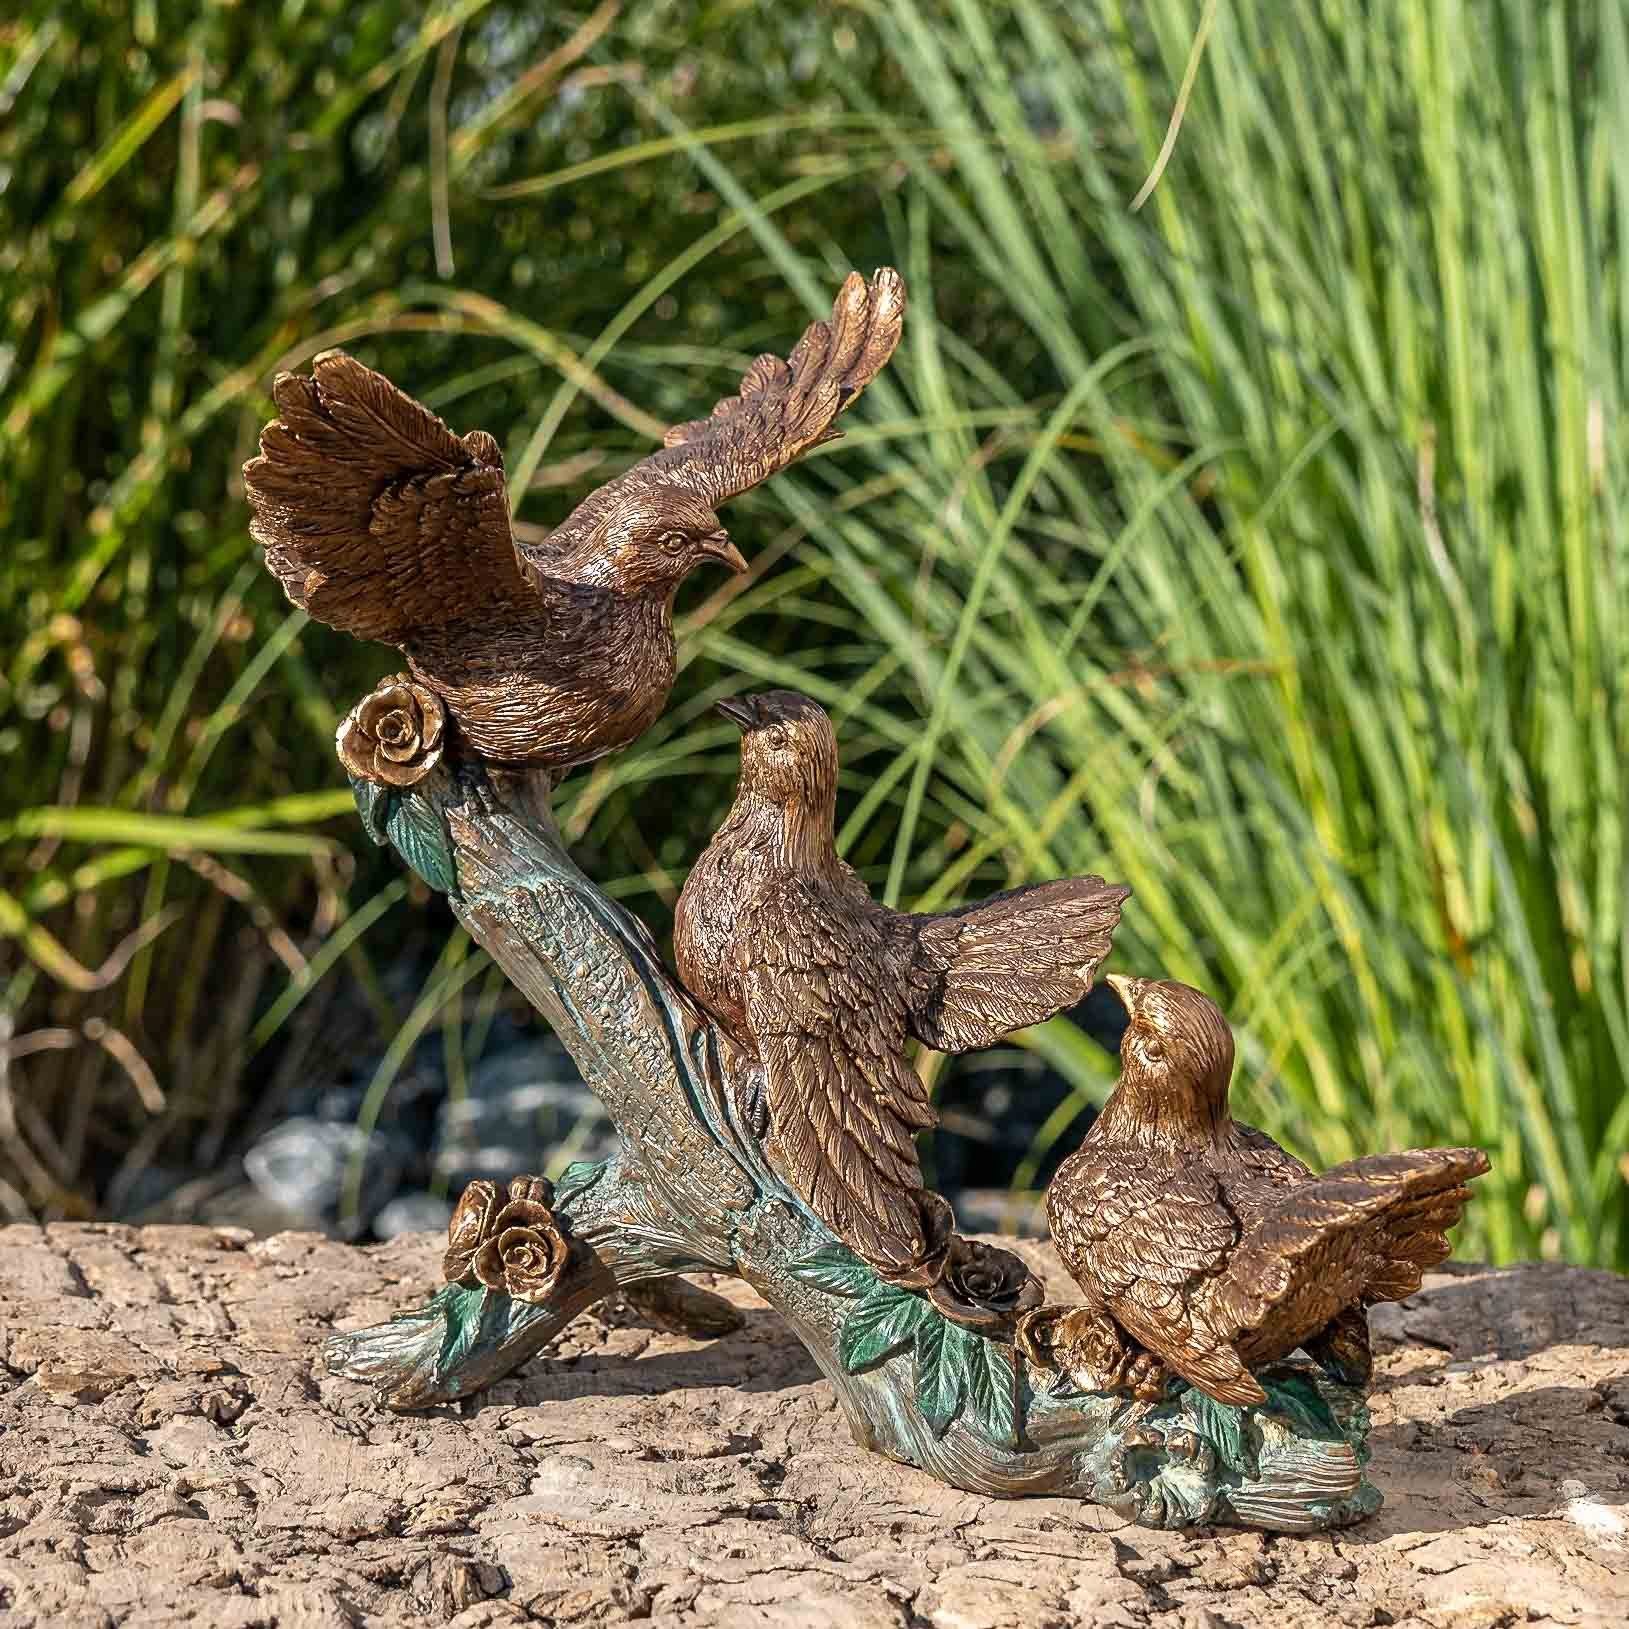 IDYL Gartenfigur Langlebig Regen gegen auf Vogel Modelle – und patiniert. Ast, Bronze – Frost, gegossen in von IDYL UV-Strahlung. werden Die und in – Wachsausschmelzverfahren Hand sehr witterungsbeständig Bronze-Skulptur Bronze robust